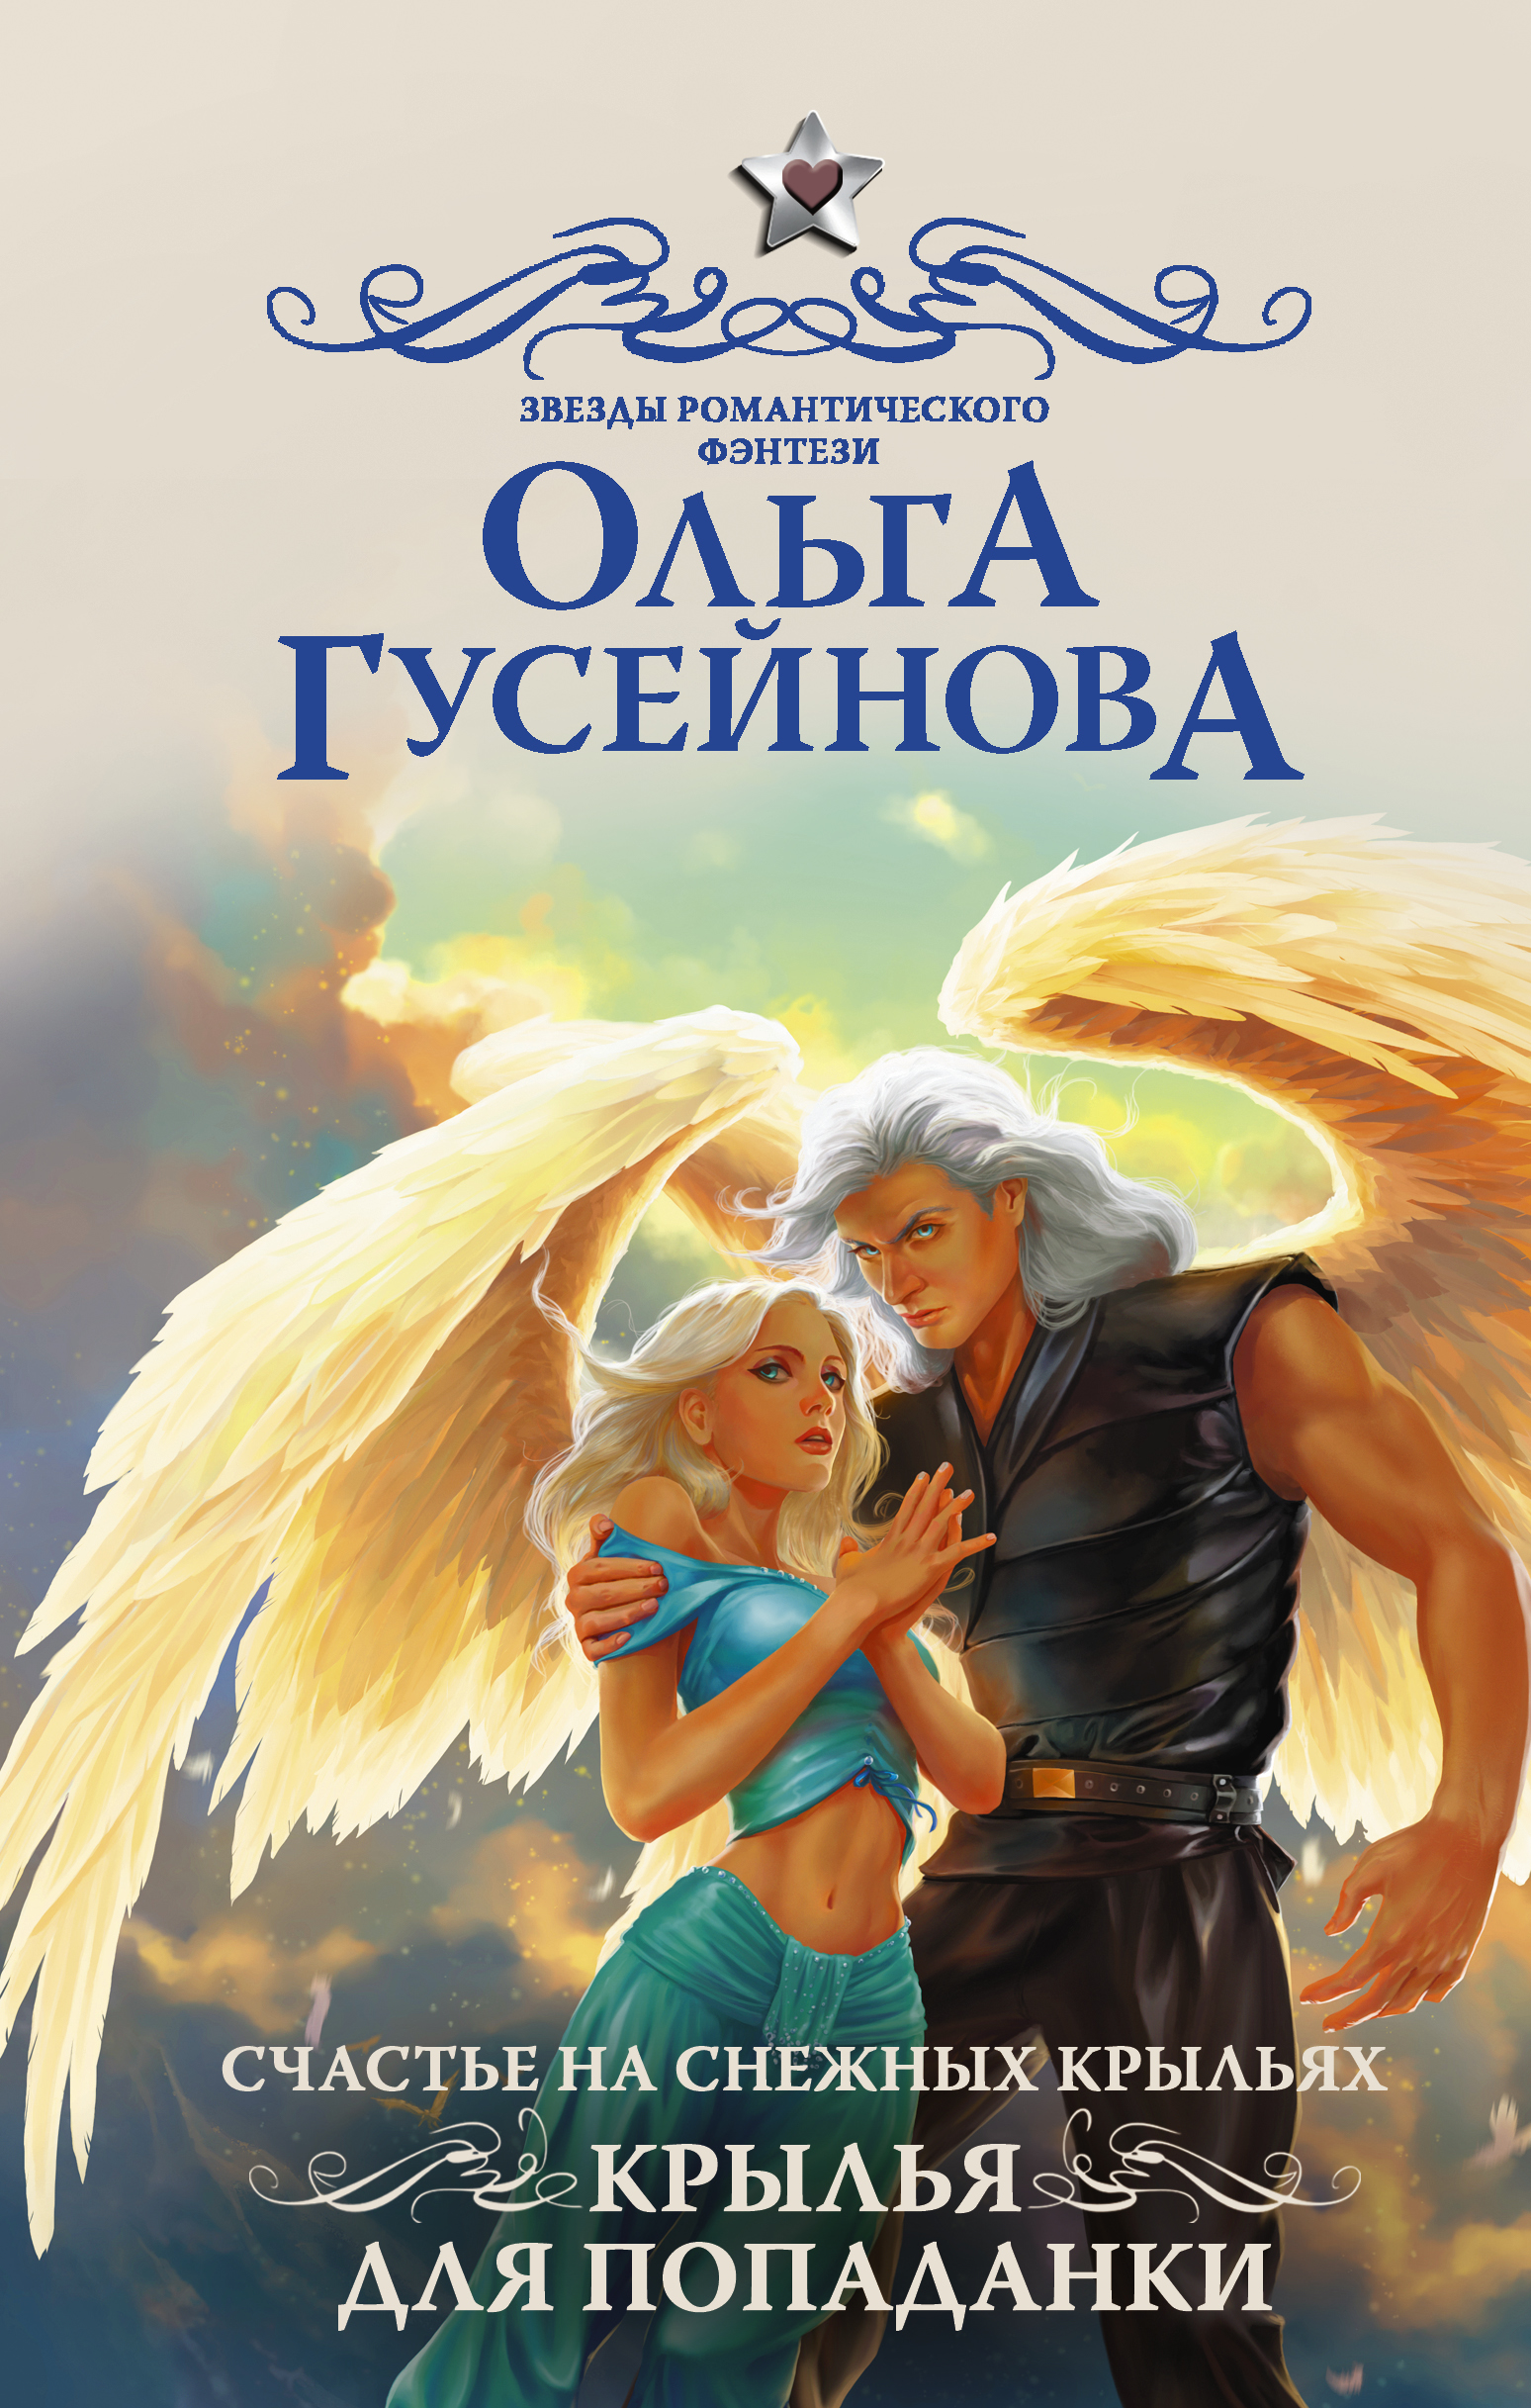 Книги про попаданок с юмором. Гусейнова счастье на снежных крыльях. Романтическое фэнтези. Крылья для попаданки.